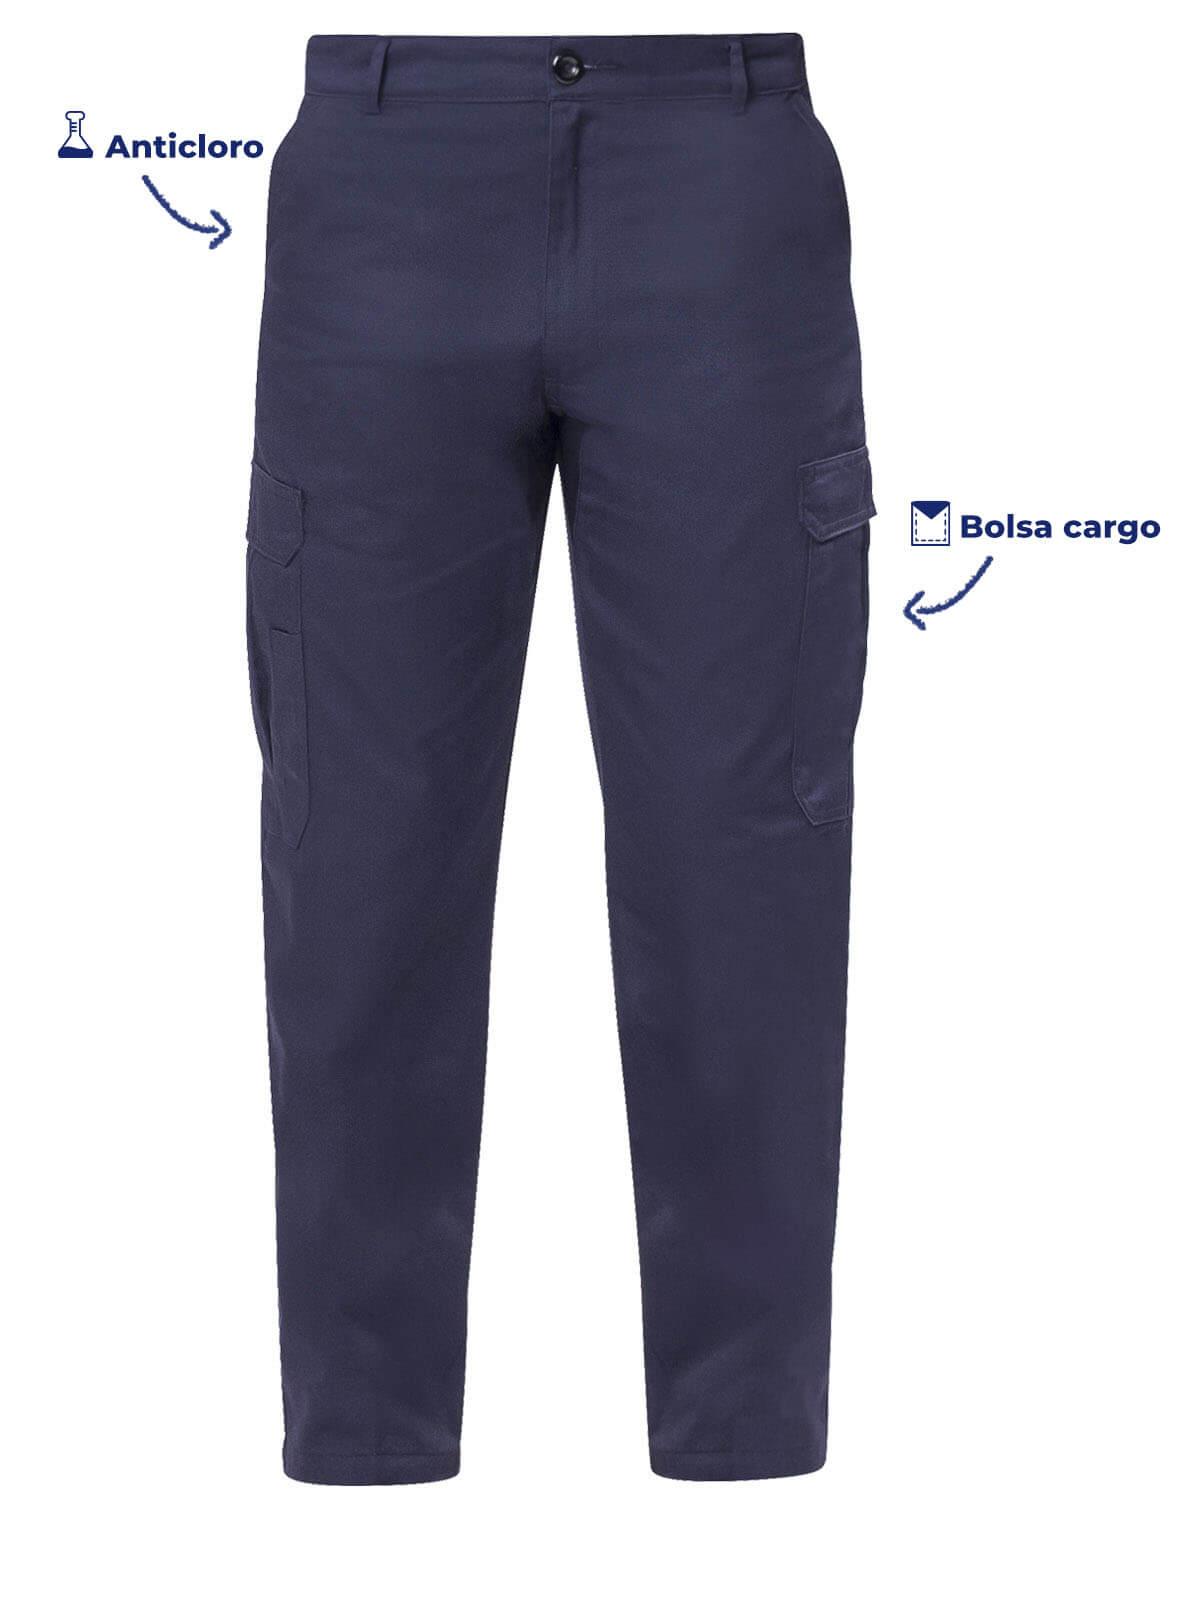 Pantalon tipo Cargo color marino